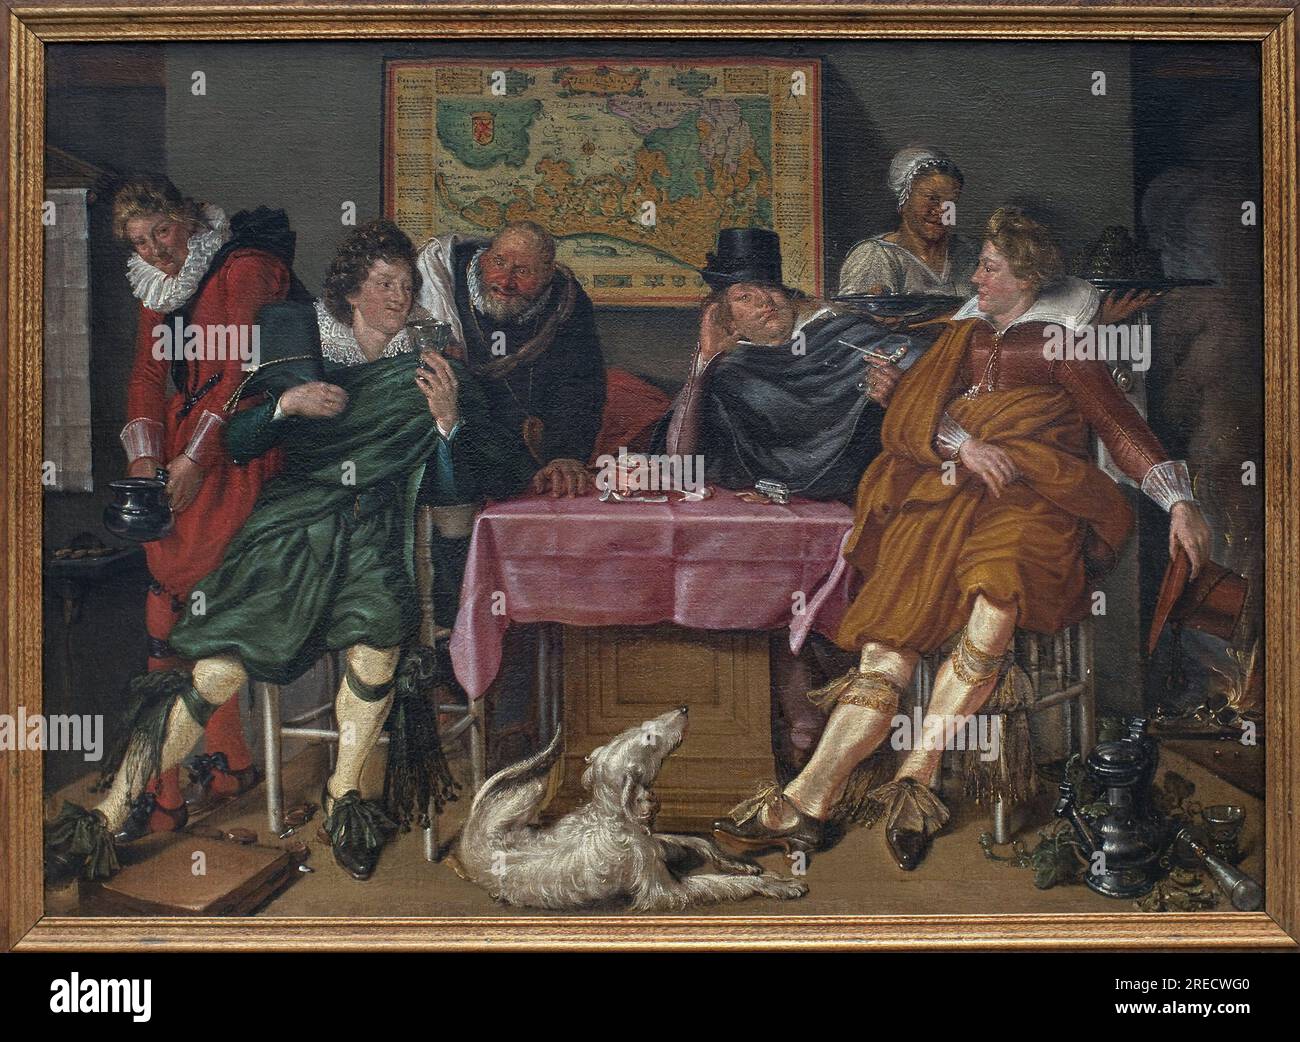 Joyeuse compagnie. Peinture de Willem Pietersz Buytewech (1591 ou 1592-1624), huile sur toile, vers 1620. Art neerlandais, 17e siecle. Musée des Beaux Arts de Rotterdam (pays Bas). Banque D'Images